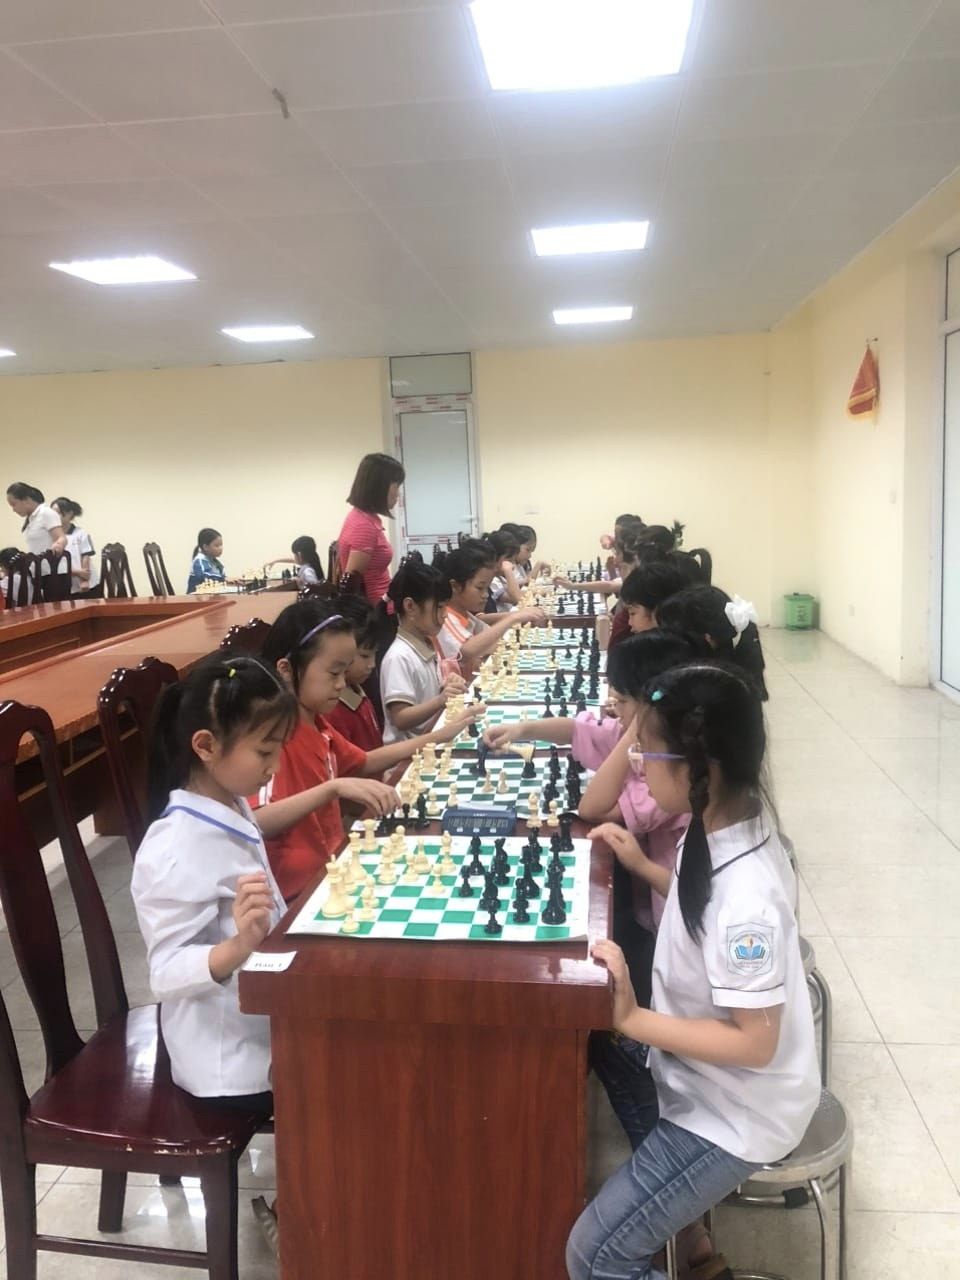 Thành tích ấn tượng của đội tuyển cờ vua trường Tiểu học Vân Canh tại Hội khỏe phù đổng cấp Huyện